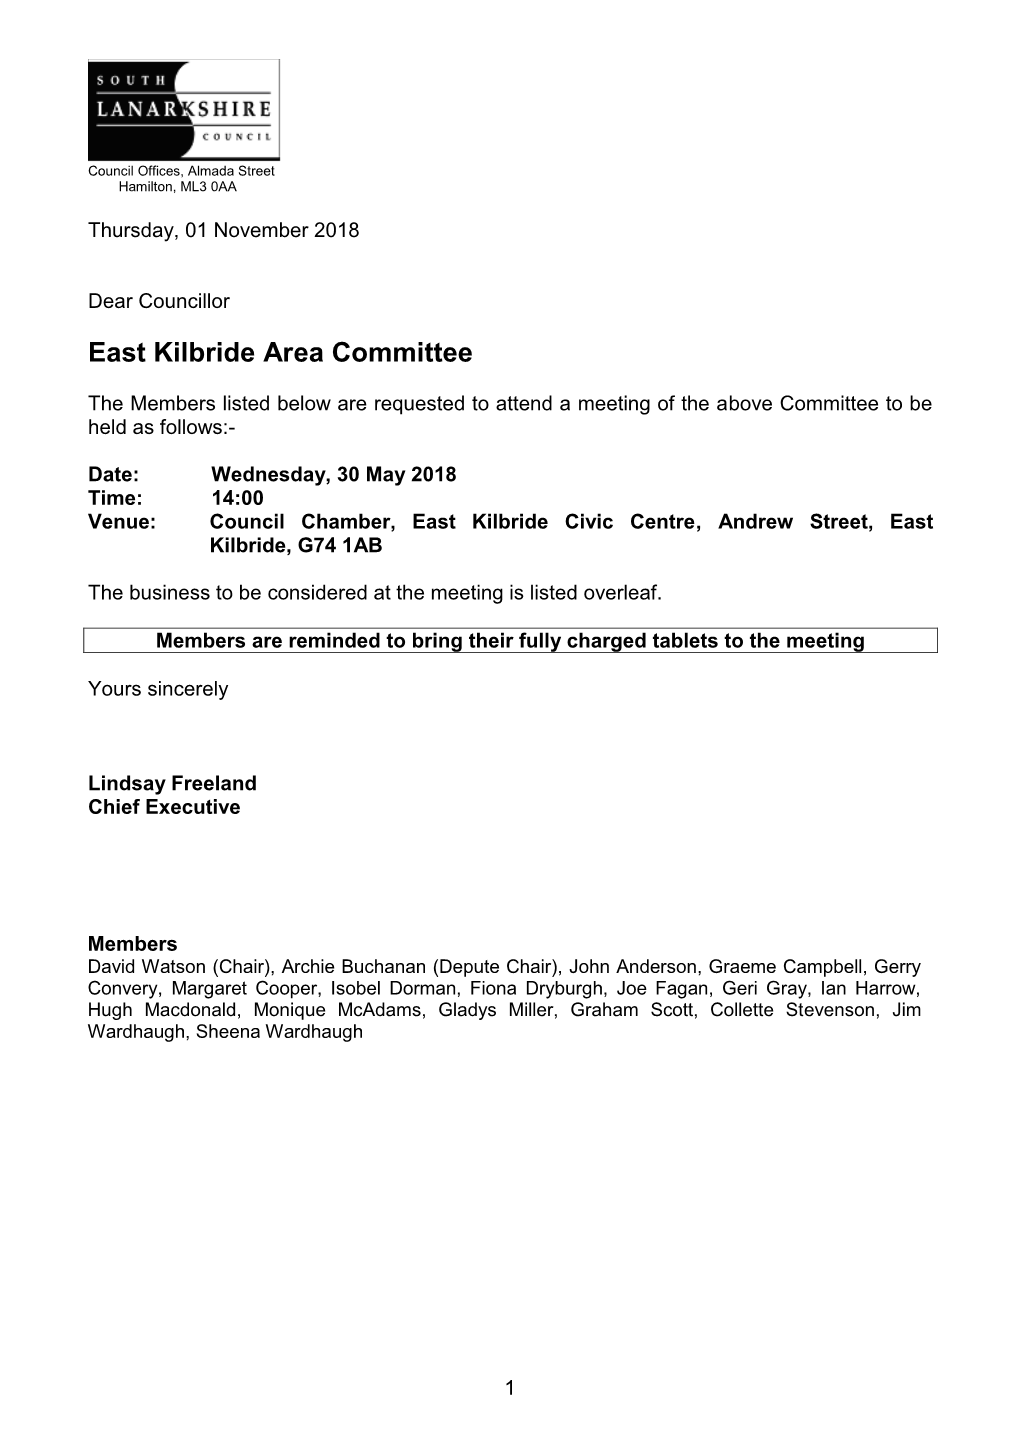 East Kilbride Area Committee